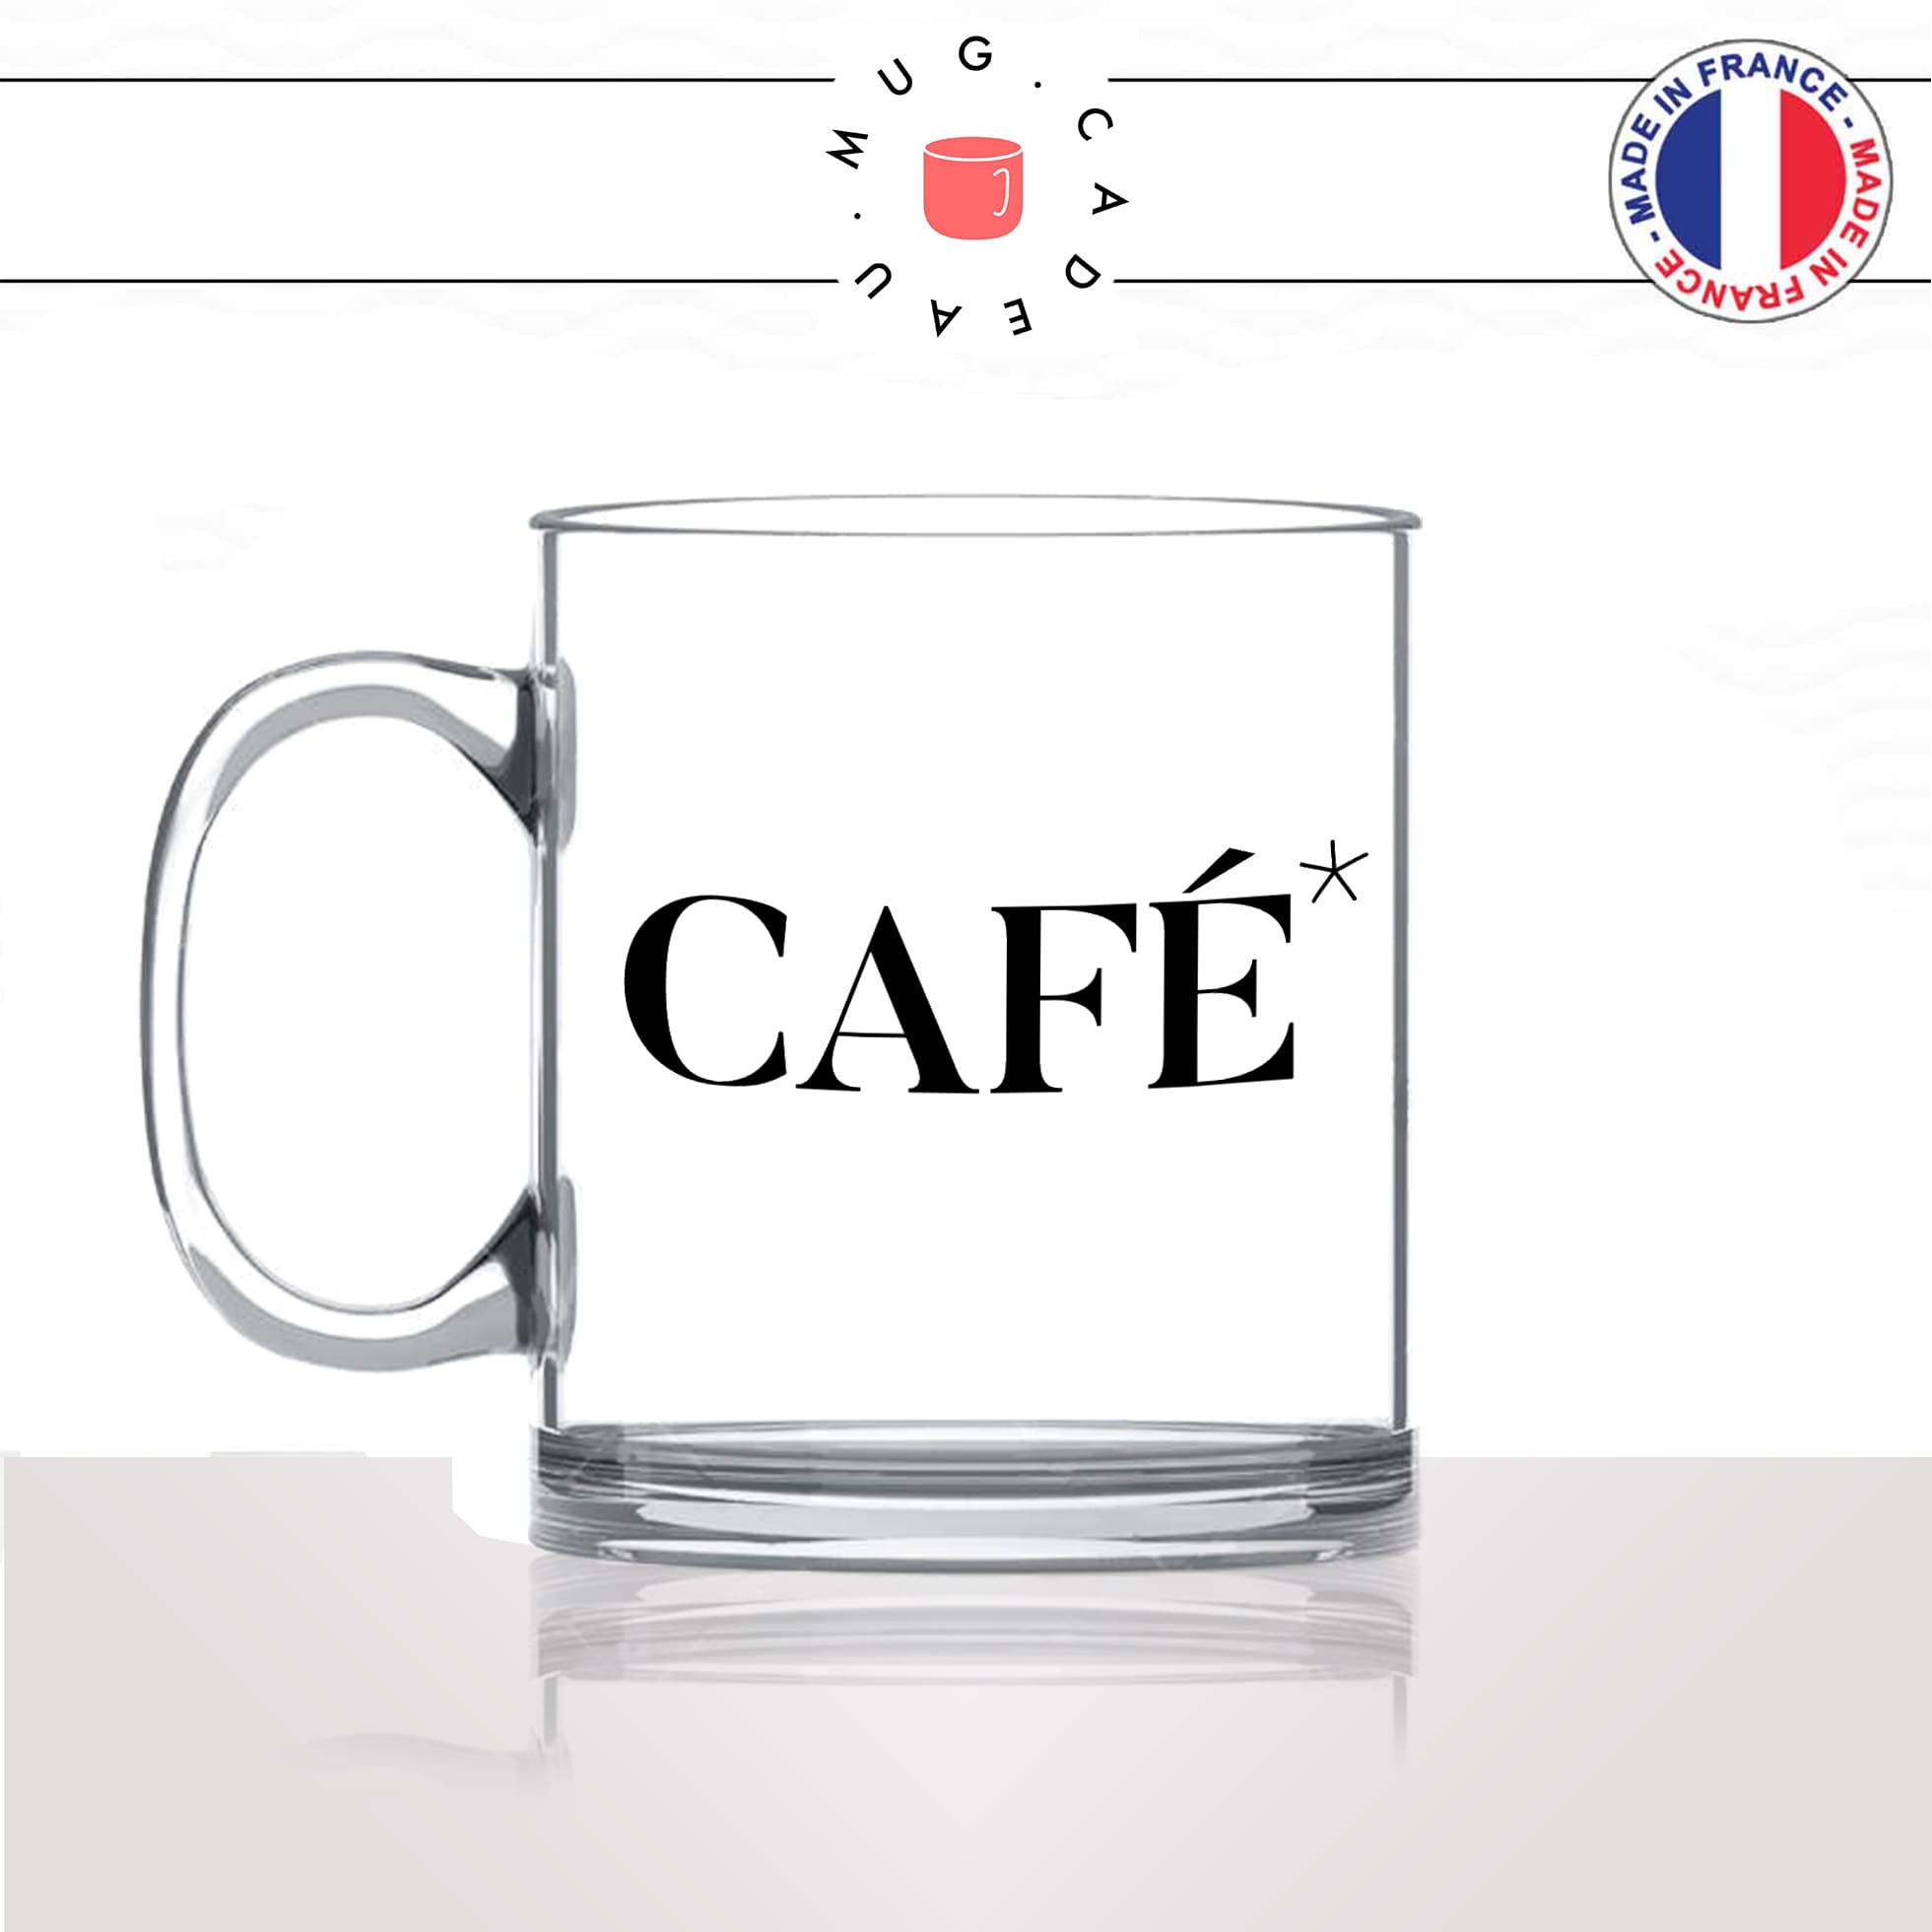 mug-tasse-en-verre-transparent-glass-caf-décaf-déca-décafeiné-pause-collegues-travail-drole-cool-humour-fun-idée-cadeau-personnalisé-café-thé